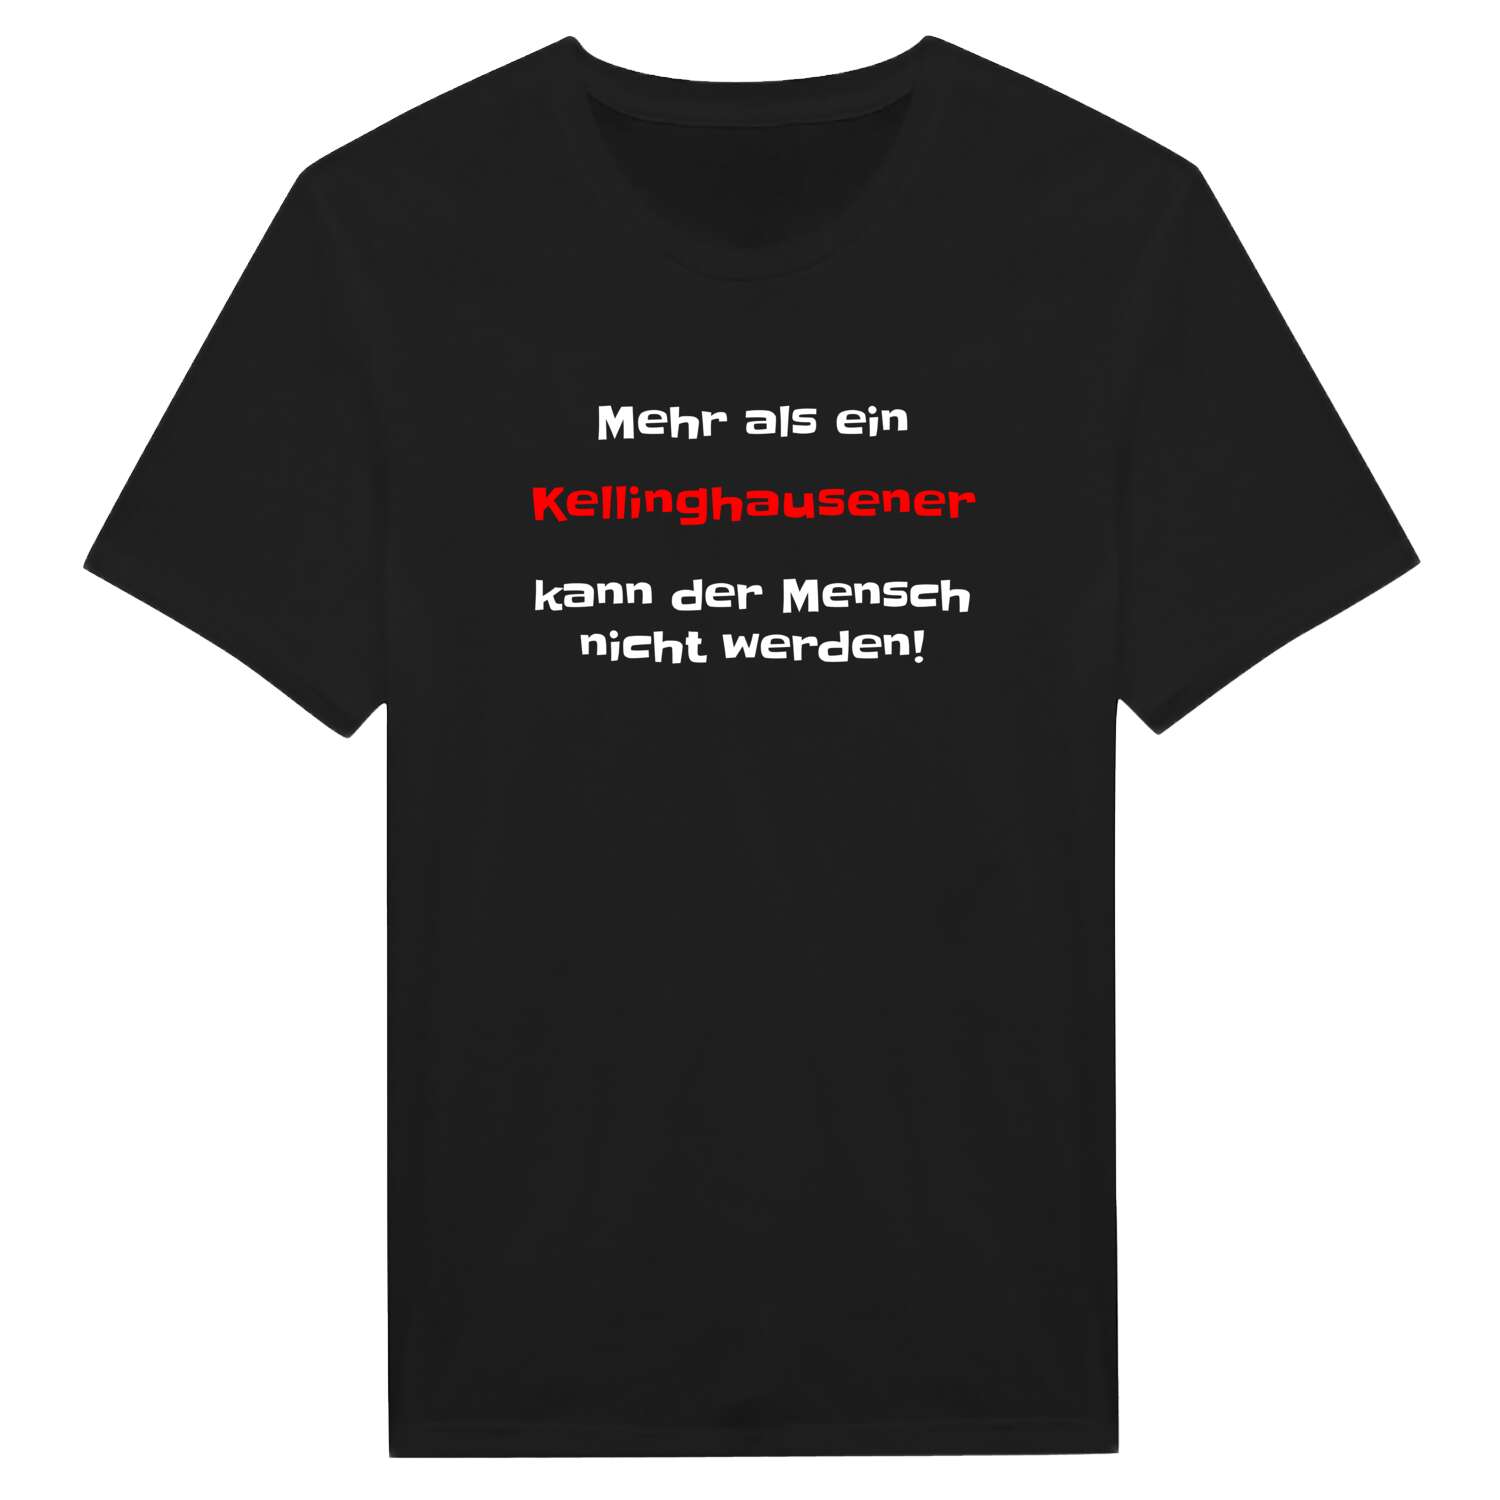 Kellinghausen T-Shirt »Mehr als ein«